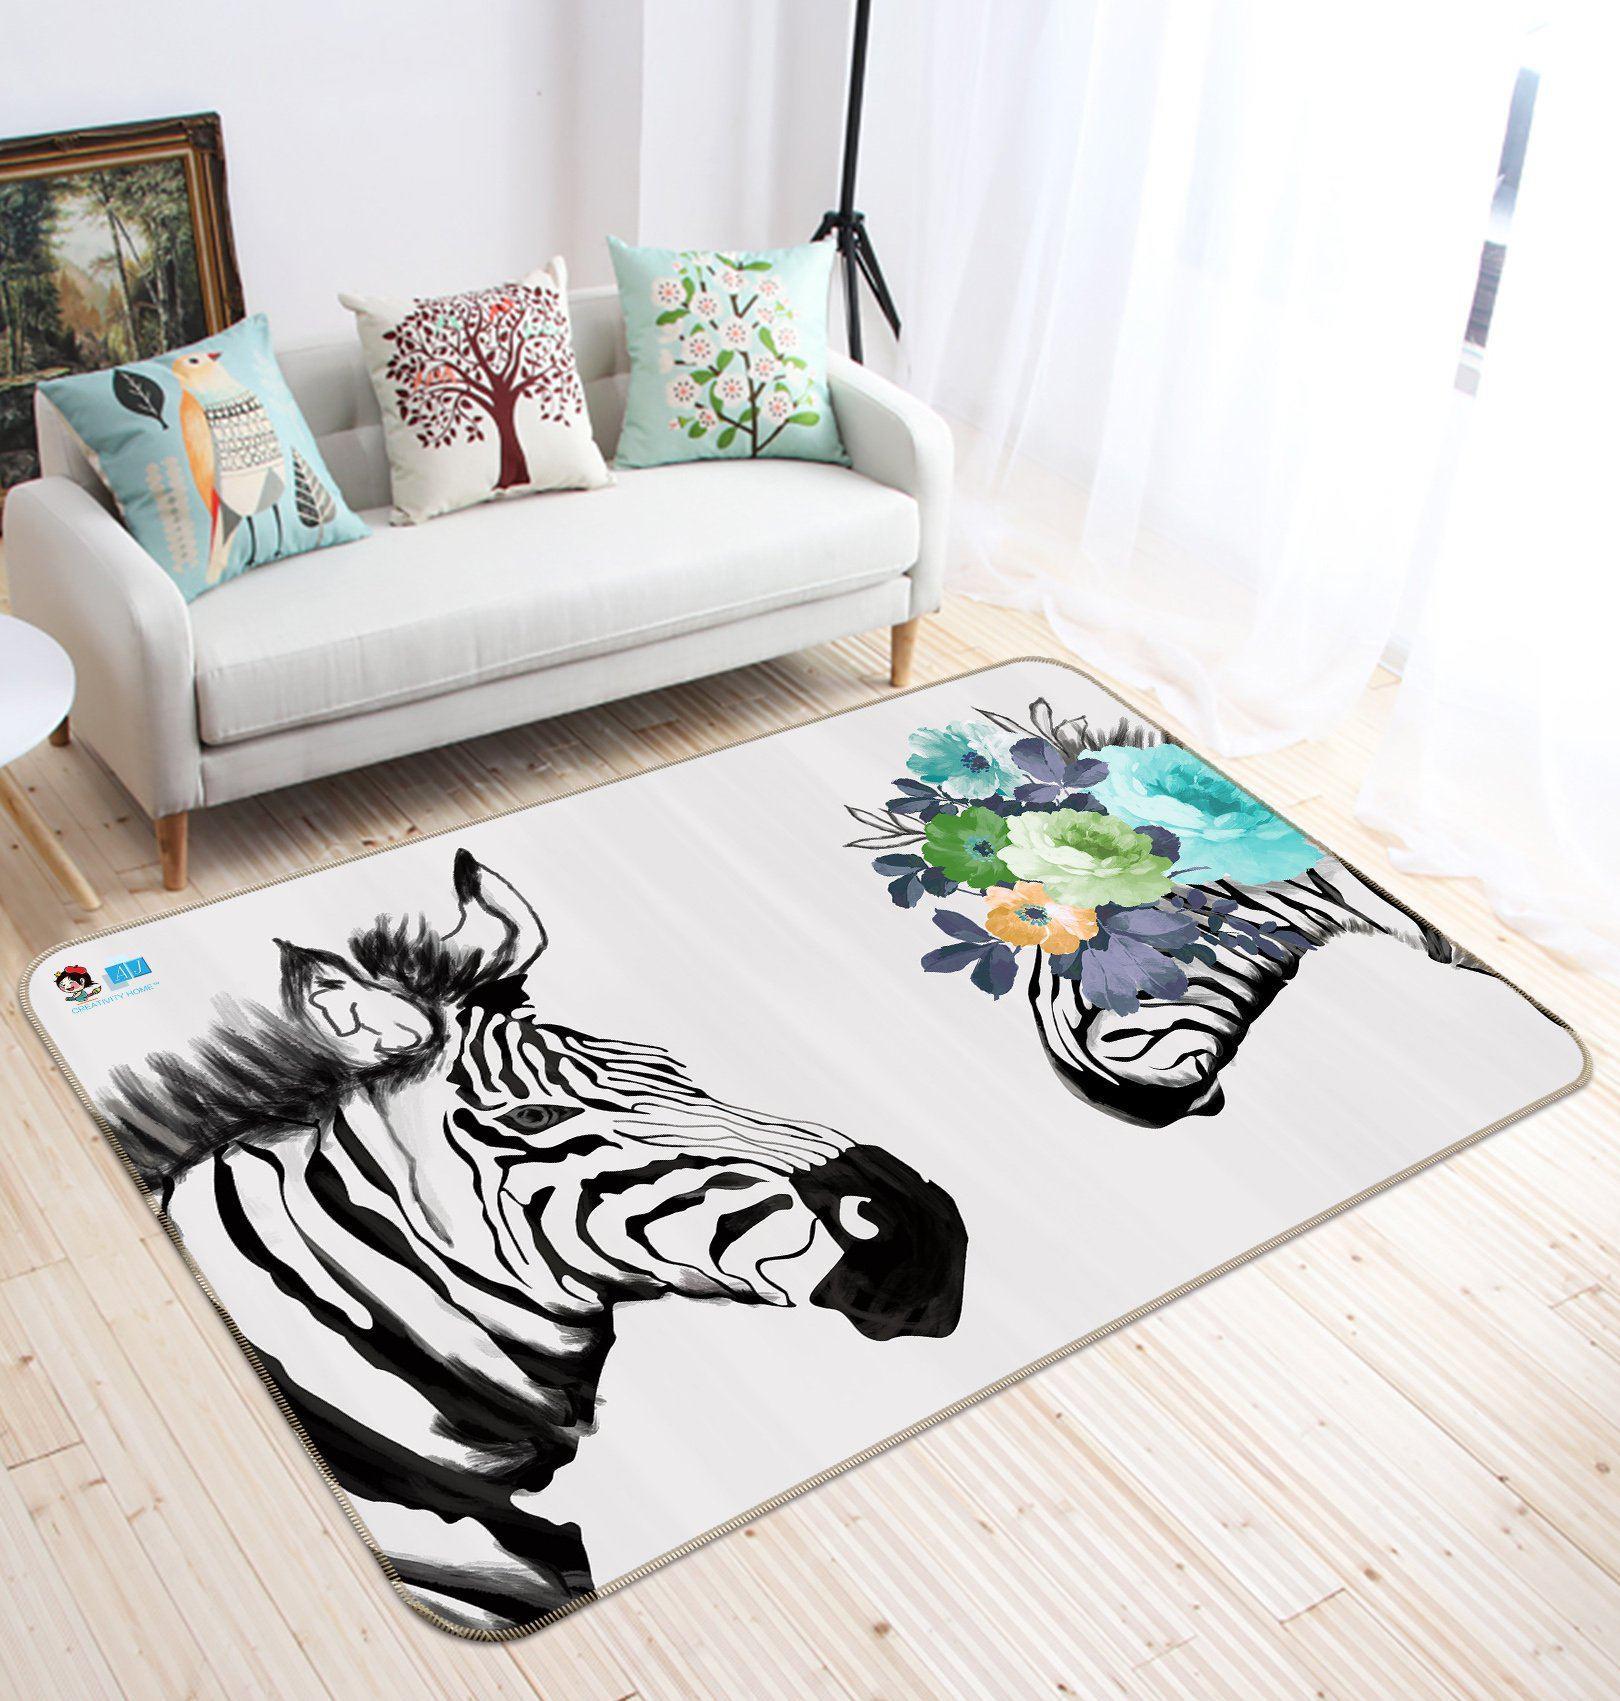 3D Home Carpet Zebra Vision 598 Non Slip Rug Mat, 80cmx120cm (31.4"x47.24")